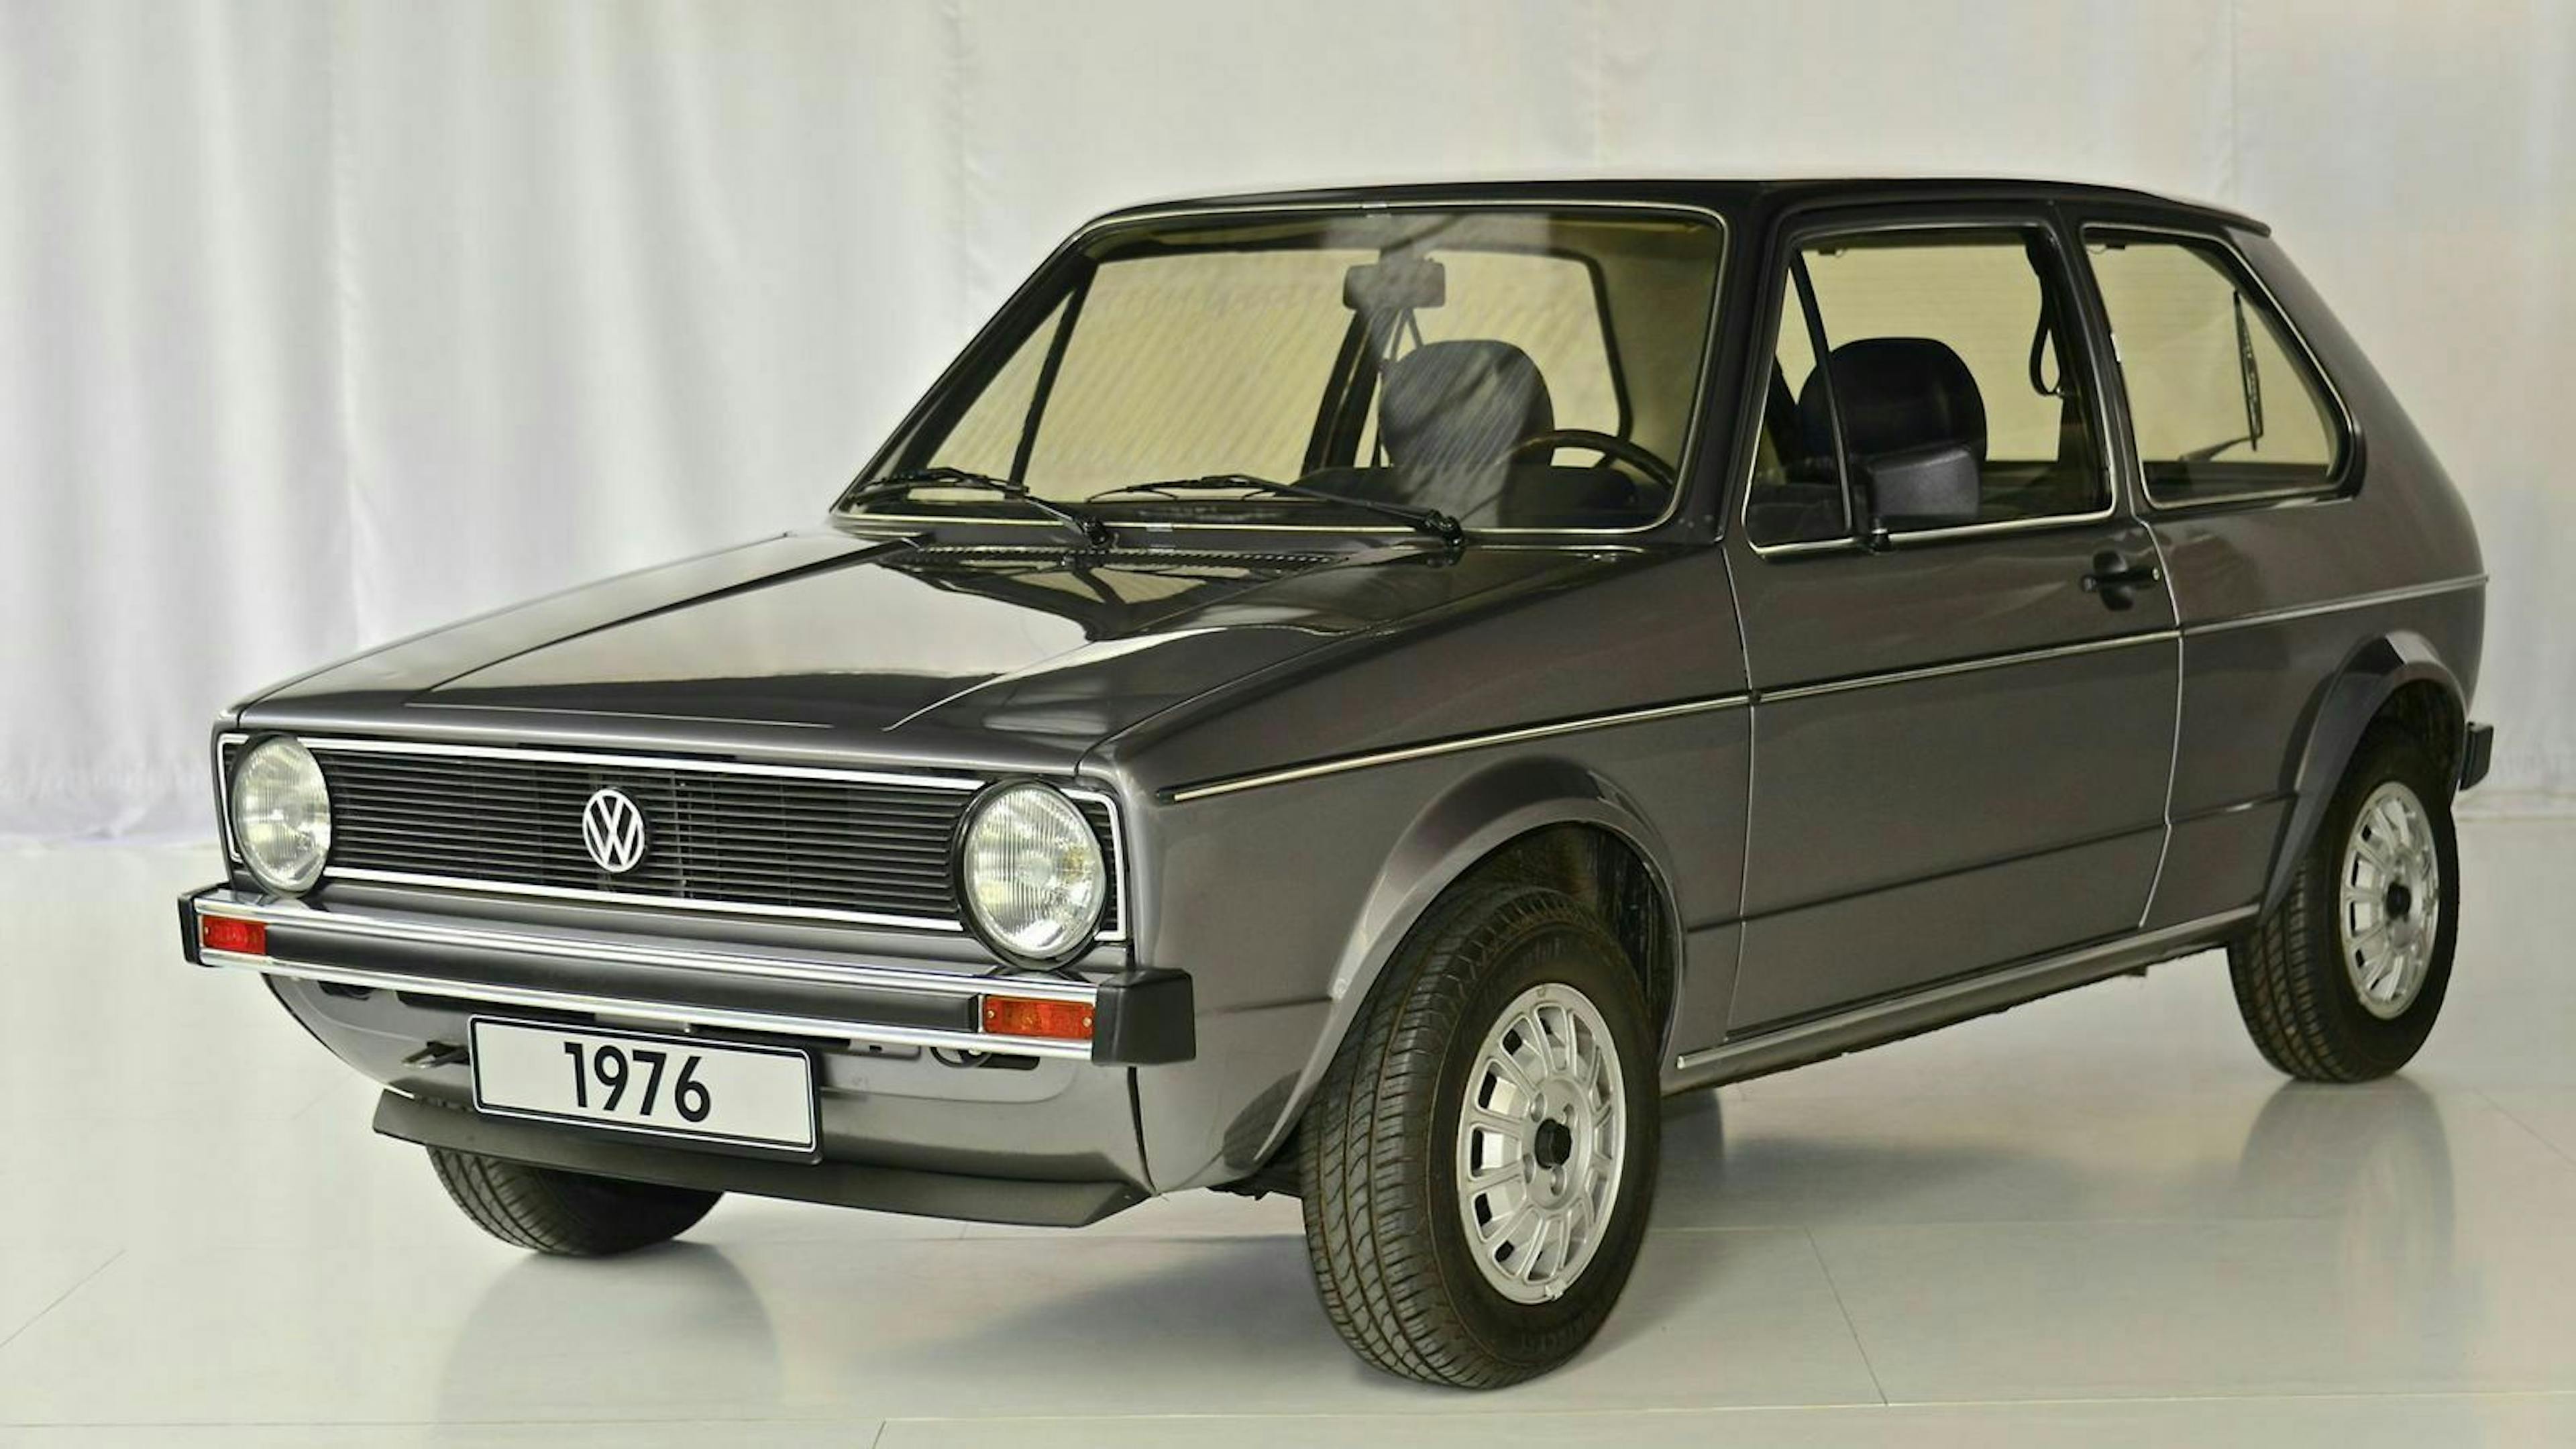 VW Golf 1 in der Ansicht von vorne-links, in einem Showroom stehend